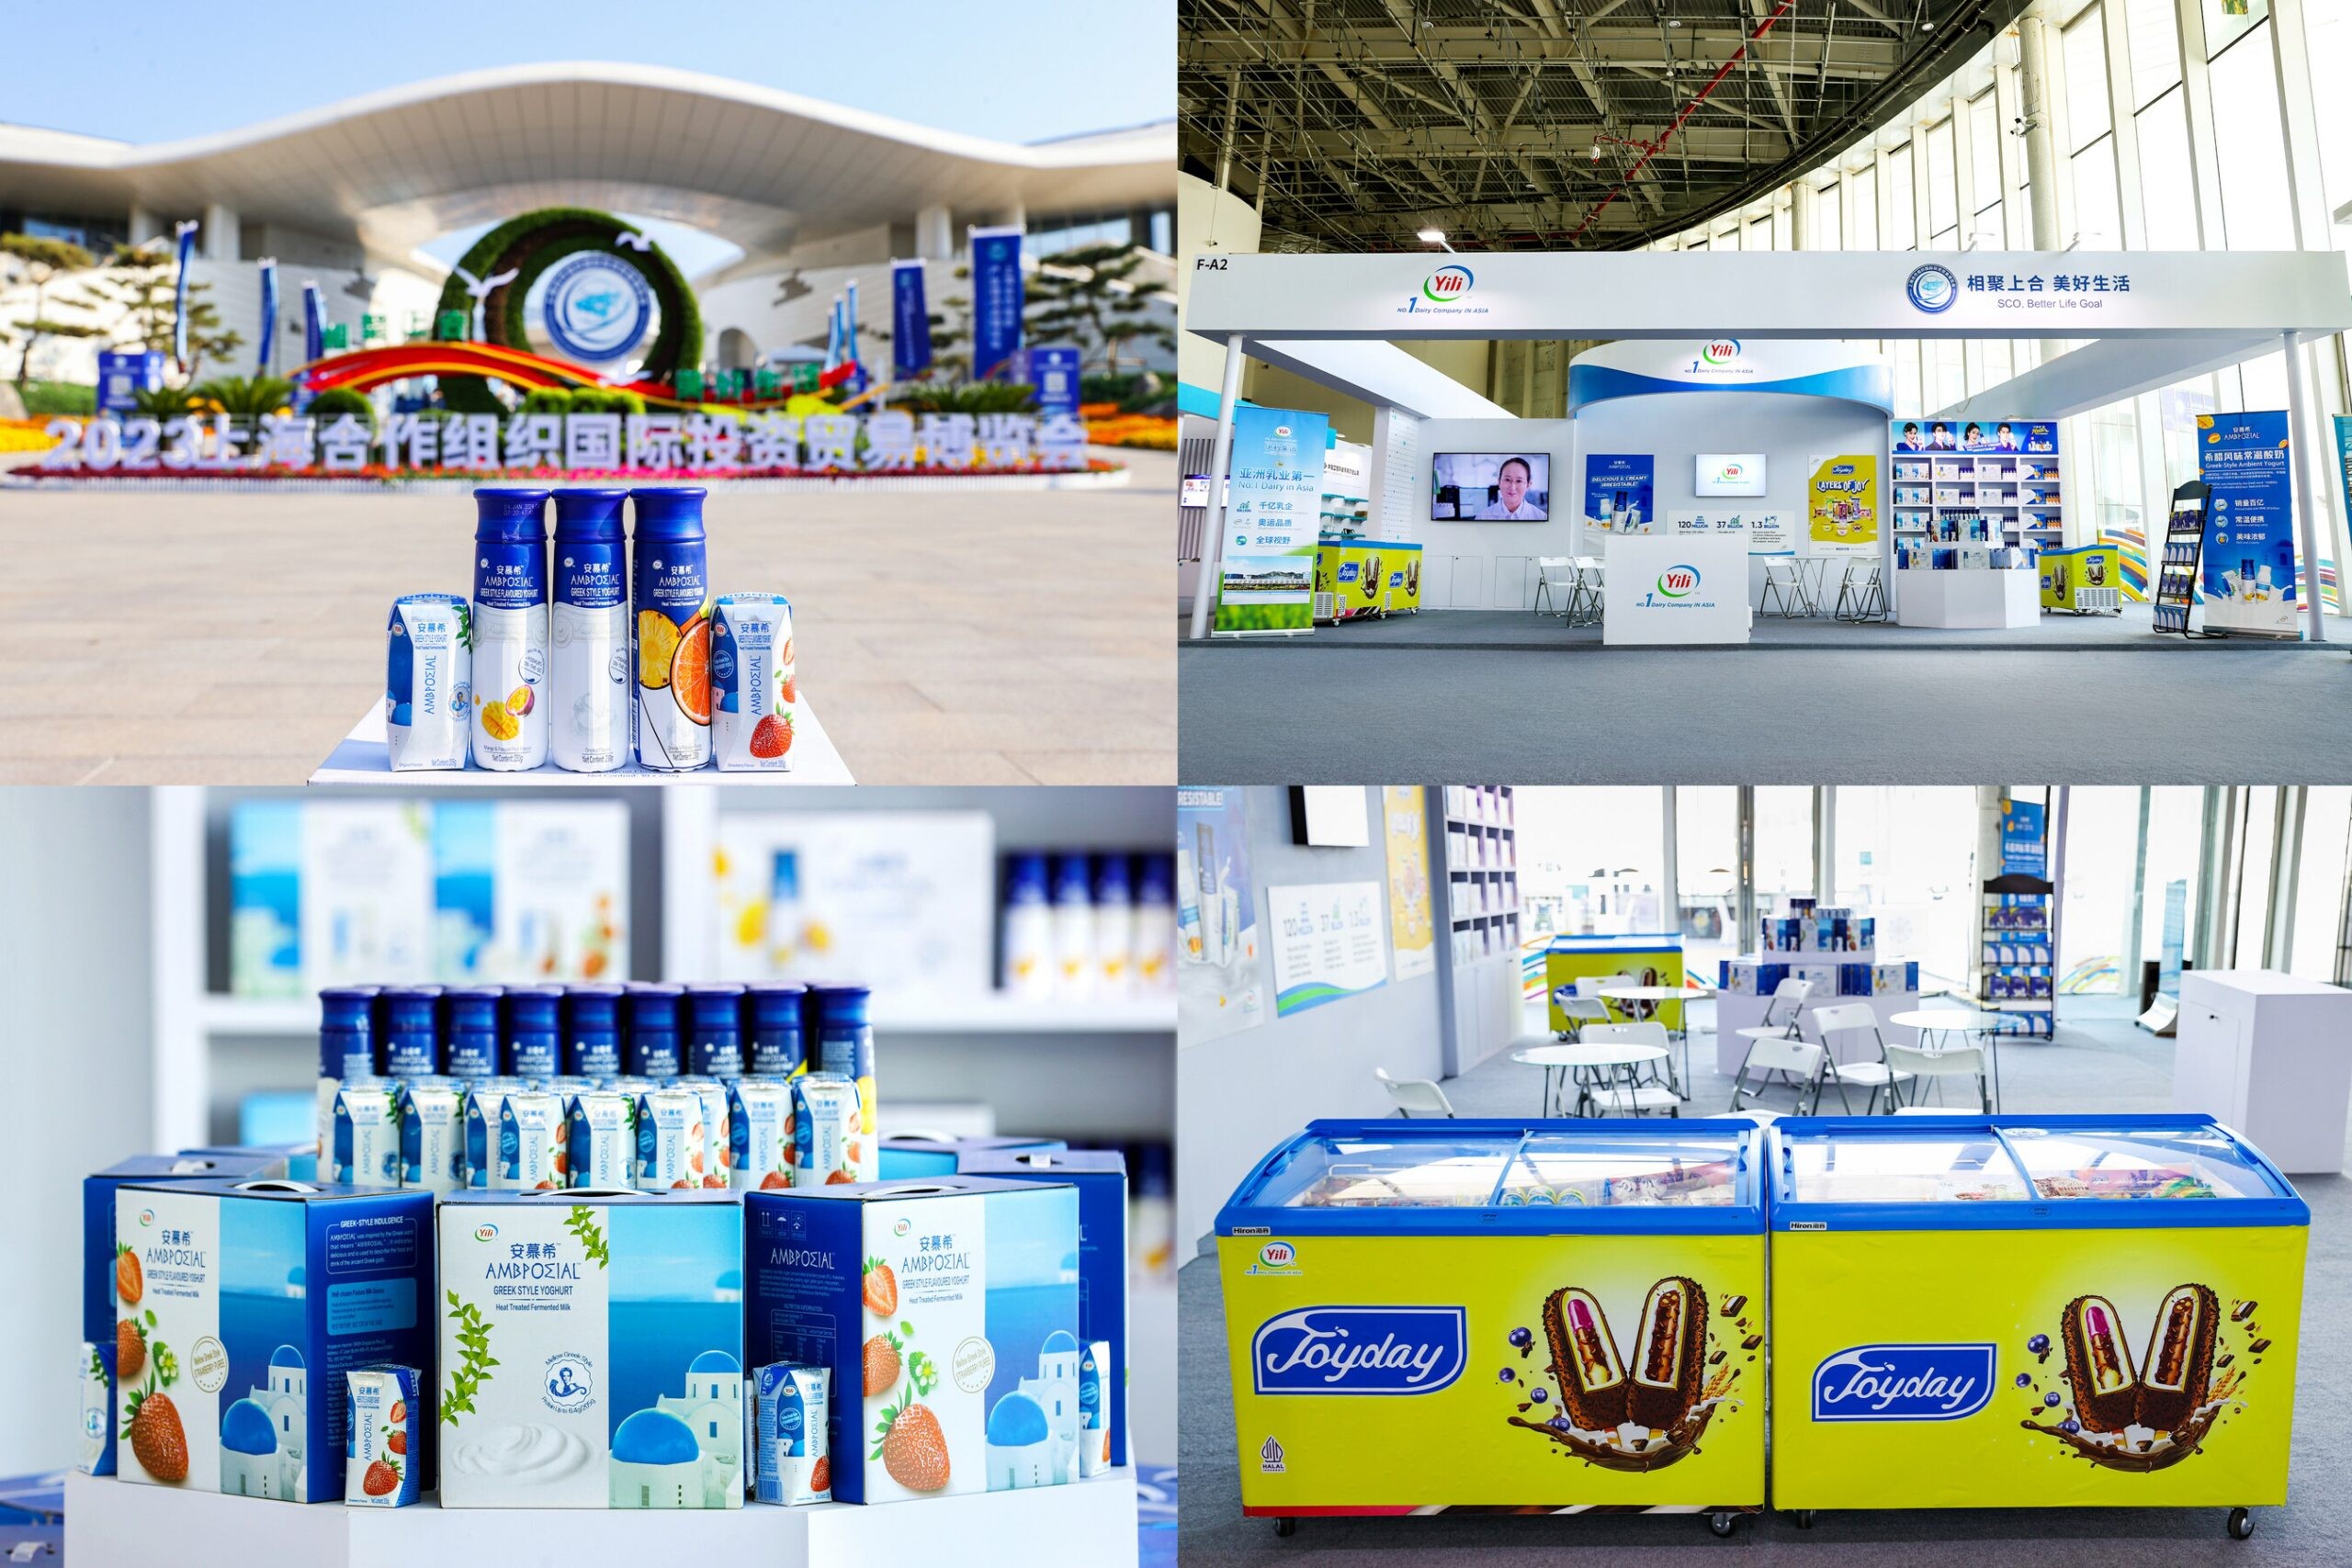 Yili จัดแสดงผลิตภัณฑ์นมในมหกรรมสินค้าและการลงทุนนานาชาติที่เมืองชิงเต่า